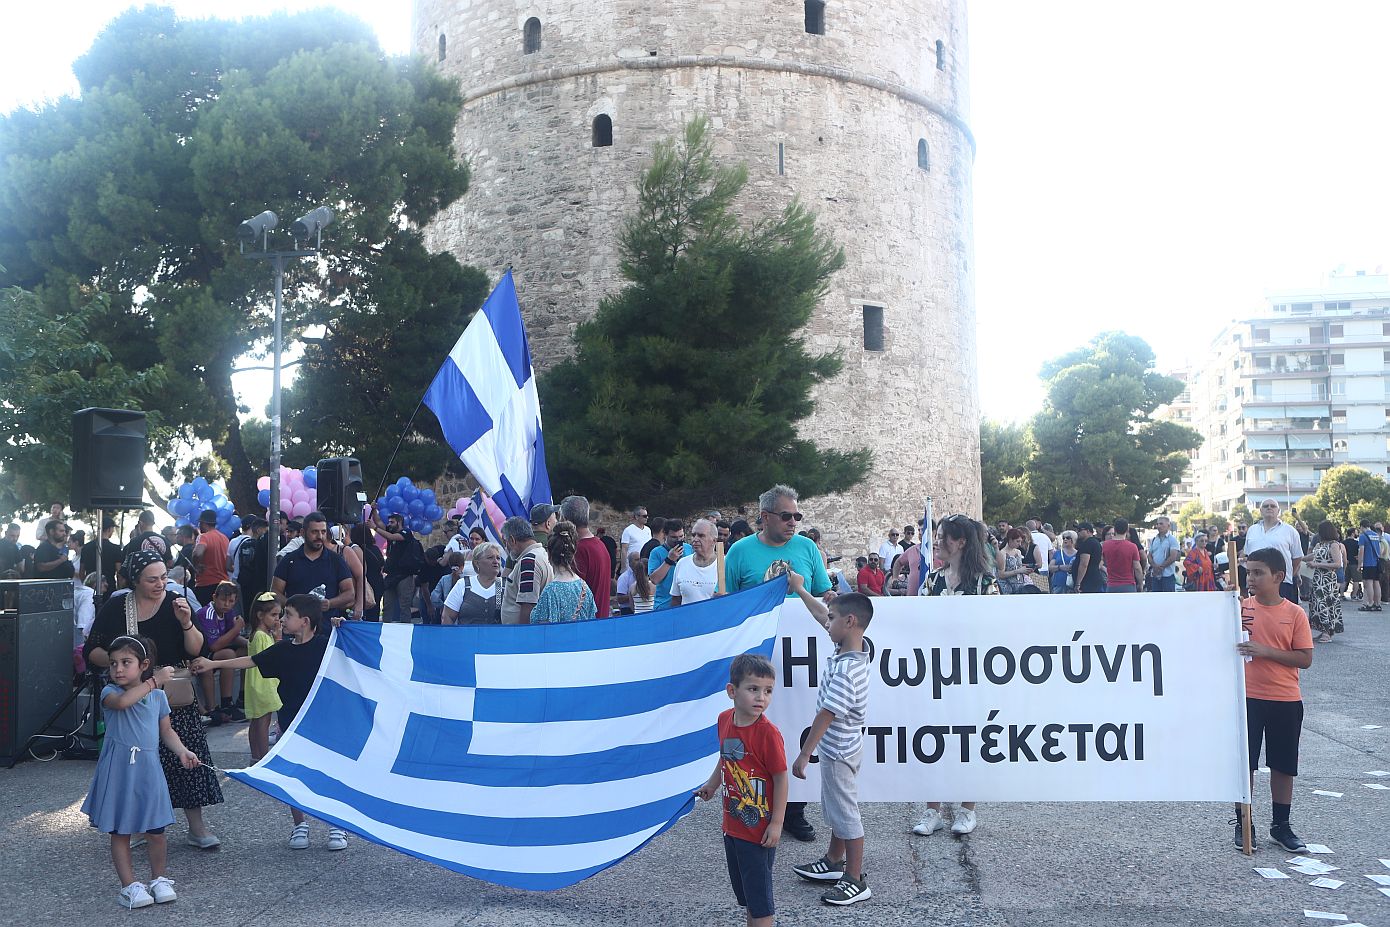 Θεσσαλονίκη: Με εικόνες Αγίων και ελληνικές σημαίες η πορεία για το Family Pride